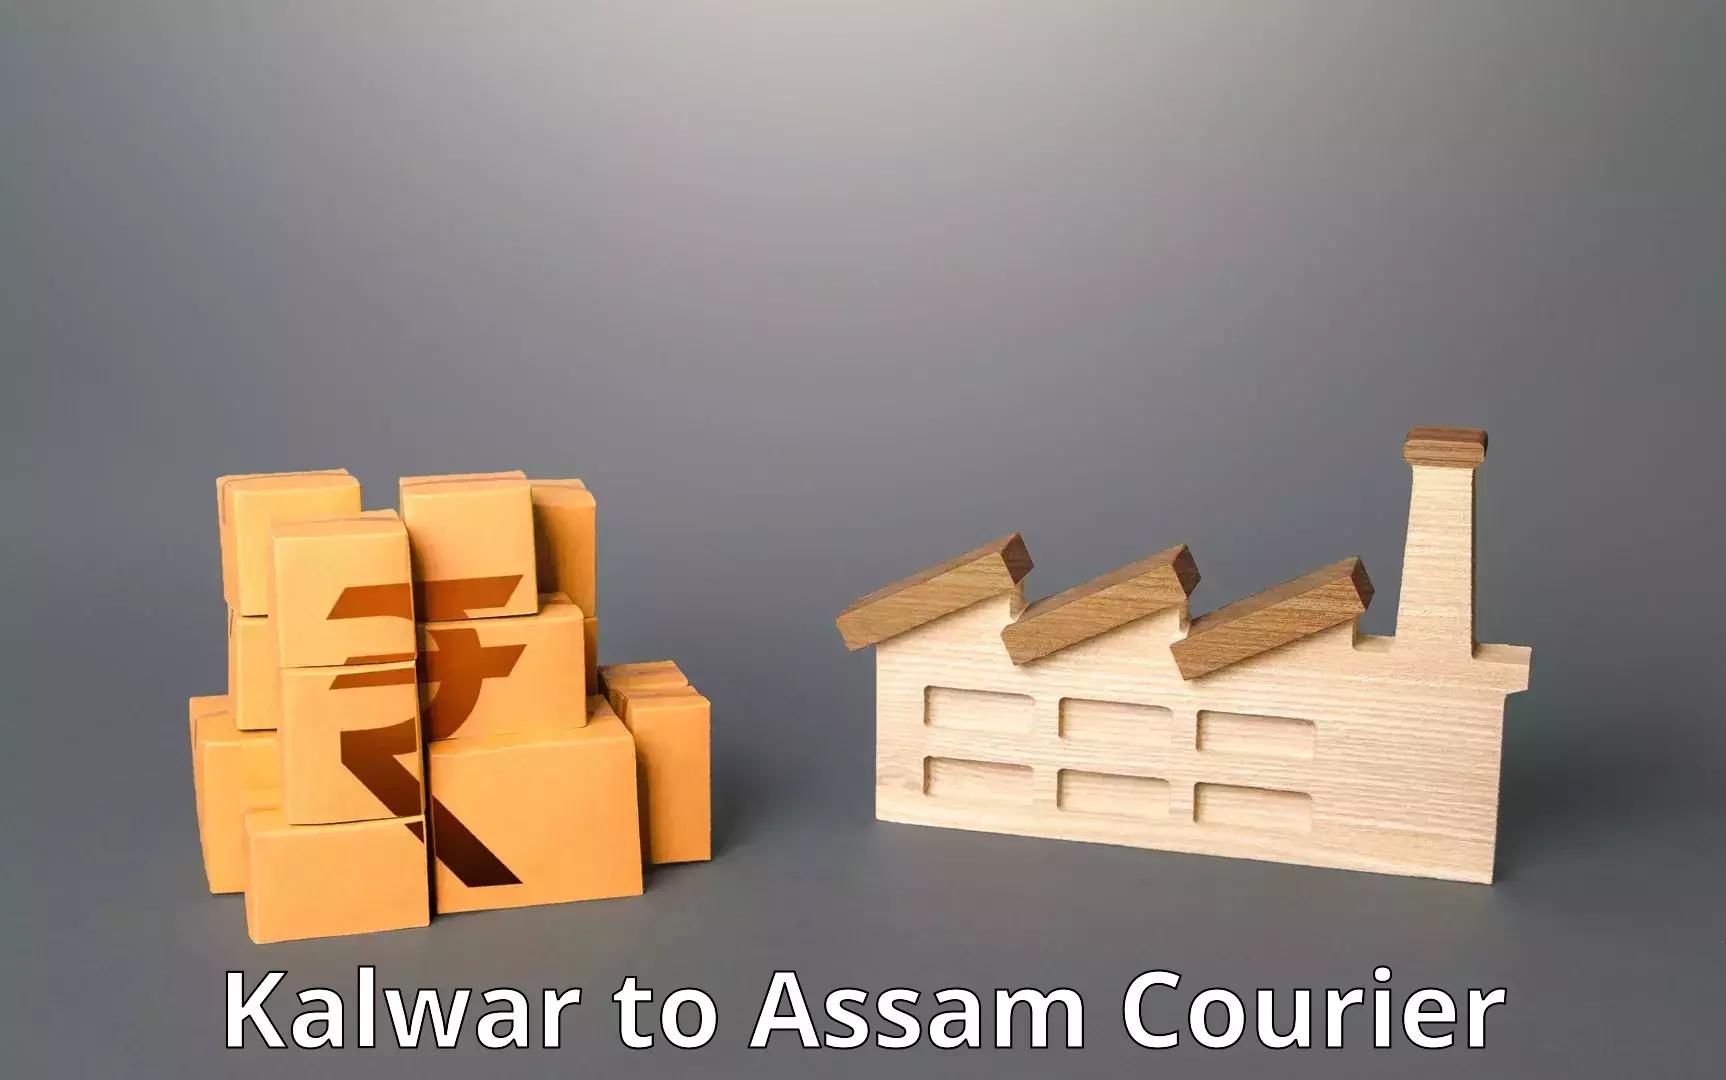 Efficient parcel tracking Kalwar to Teok